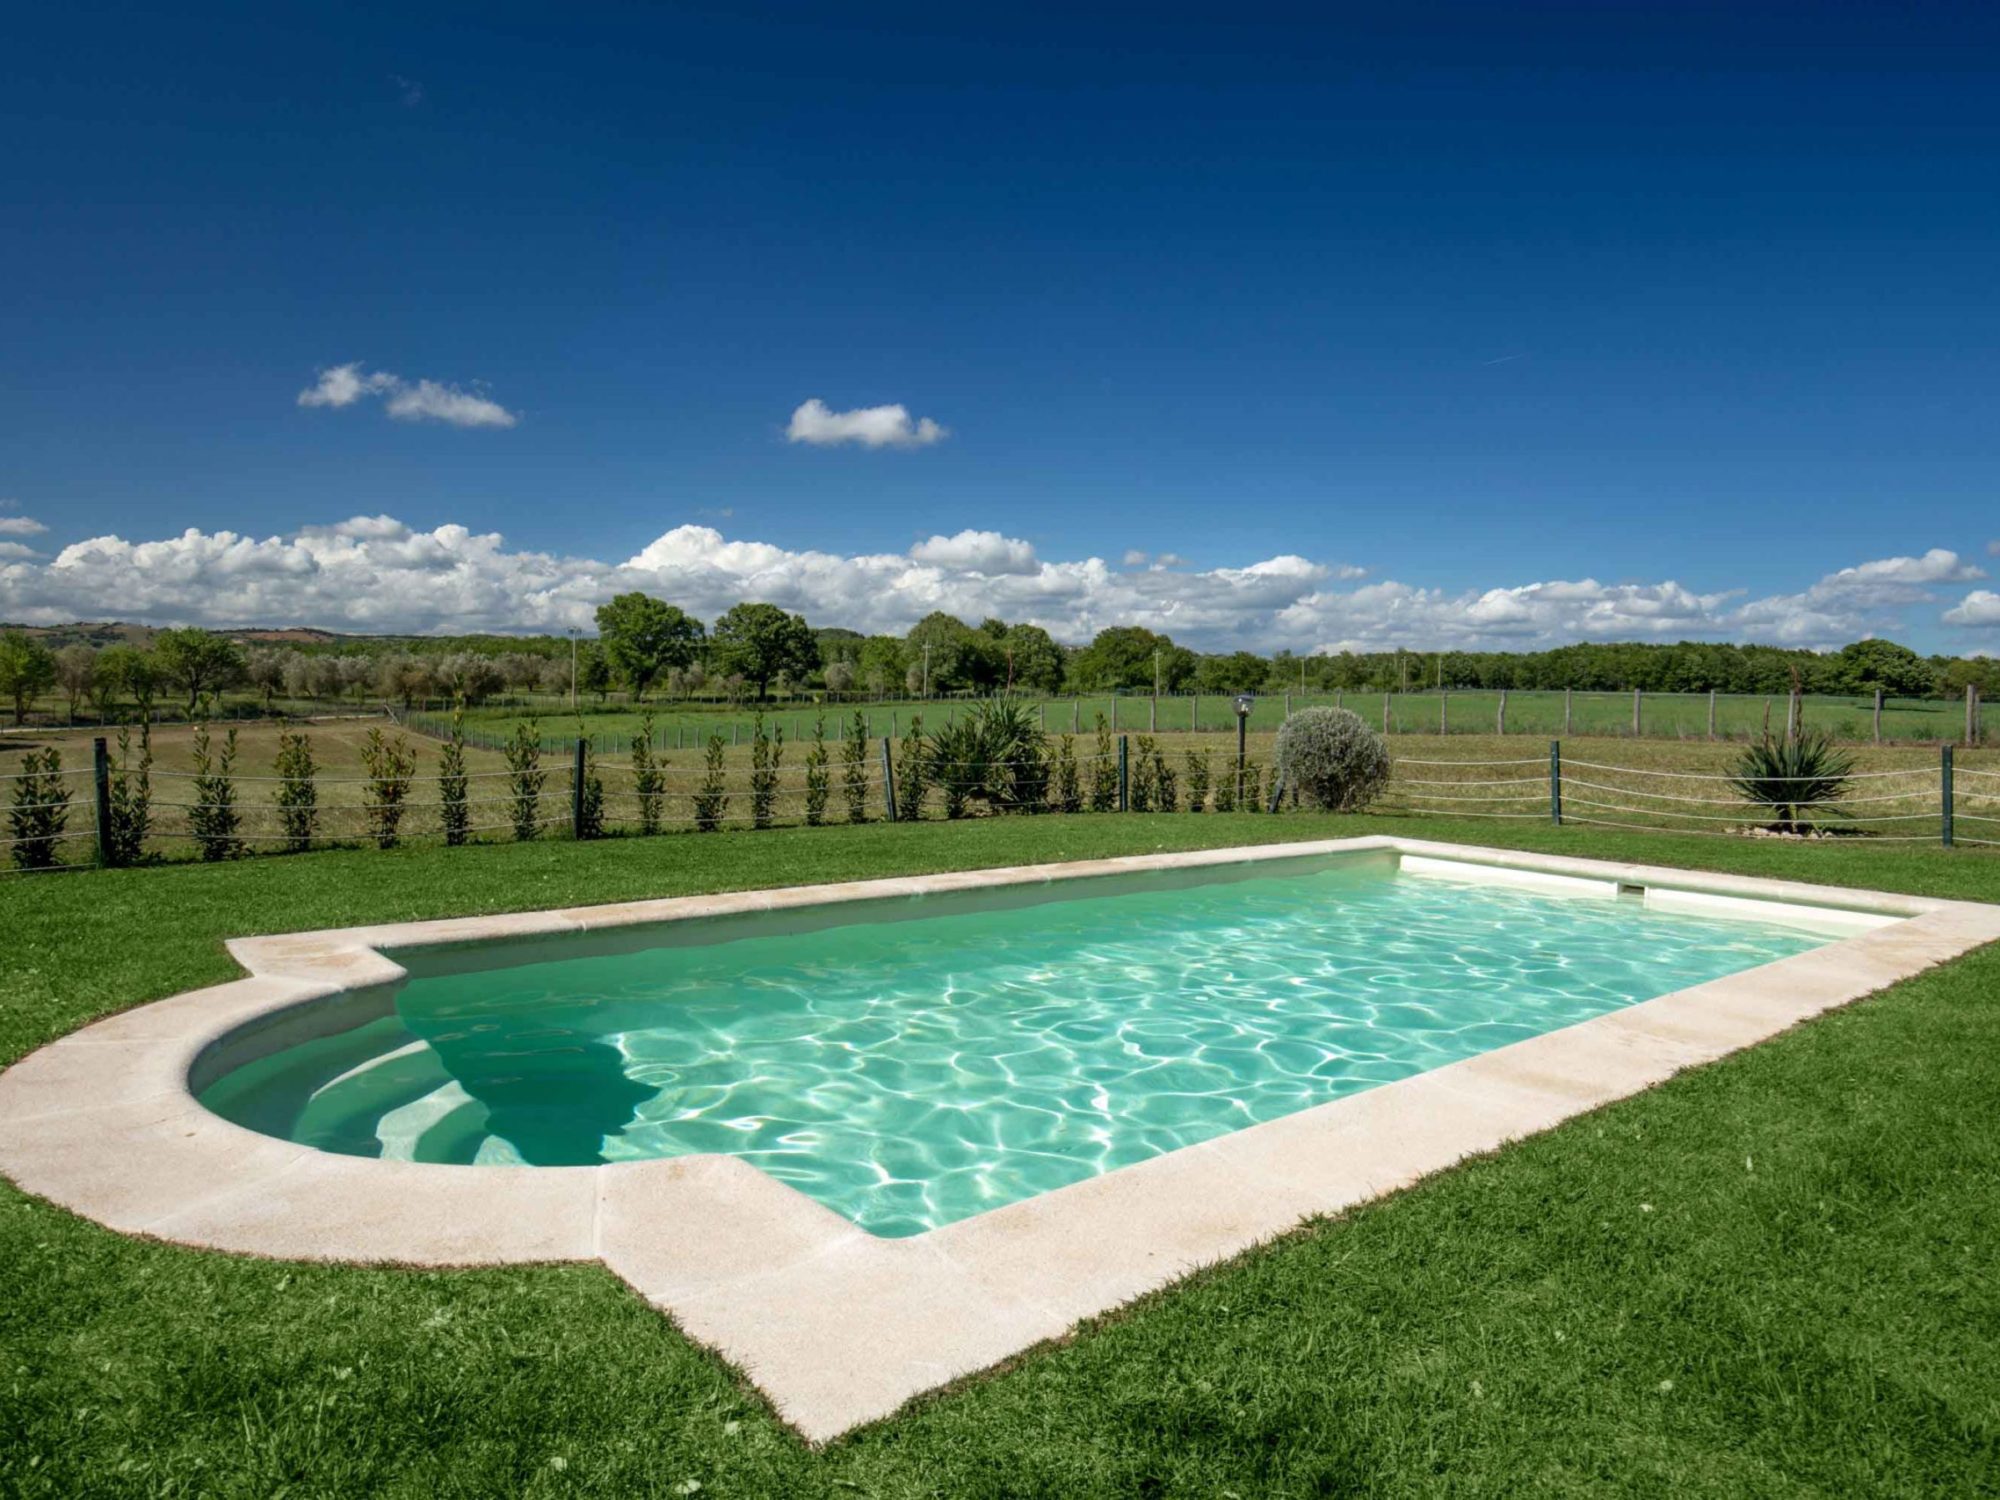 borgovera-tuscany-vacation-toscana-maremma-terme-saturnia-manciano-dettagli-giardino-IMG_9835-piscina-3